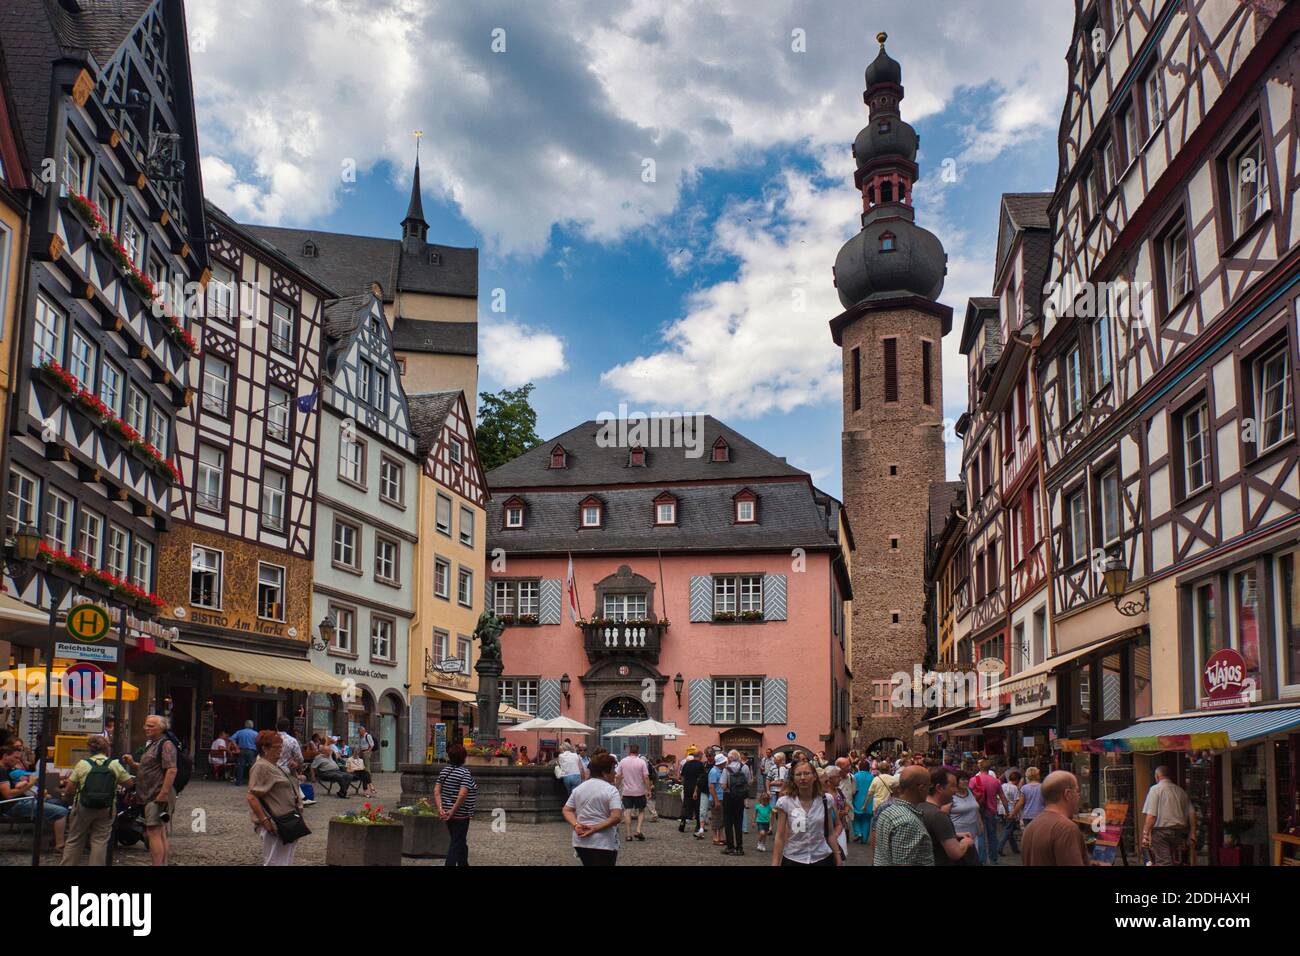 Ein geschäftiges Stadtplatz in Cochem mit Menschen mit Häusern, Ladenfronten und Kirchturm, Cochem am Rhein, Deutschland gedrängt Stockfoto